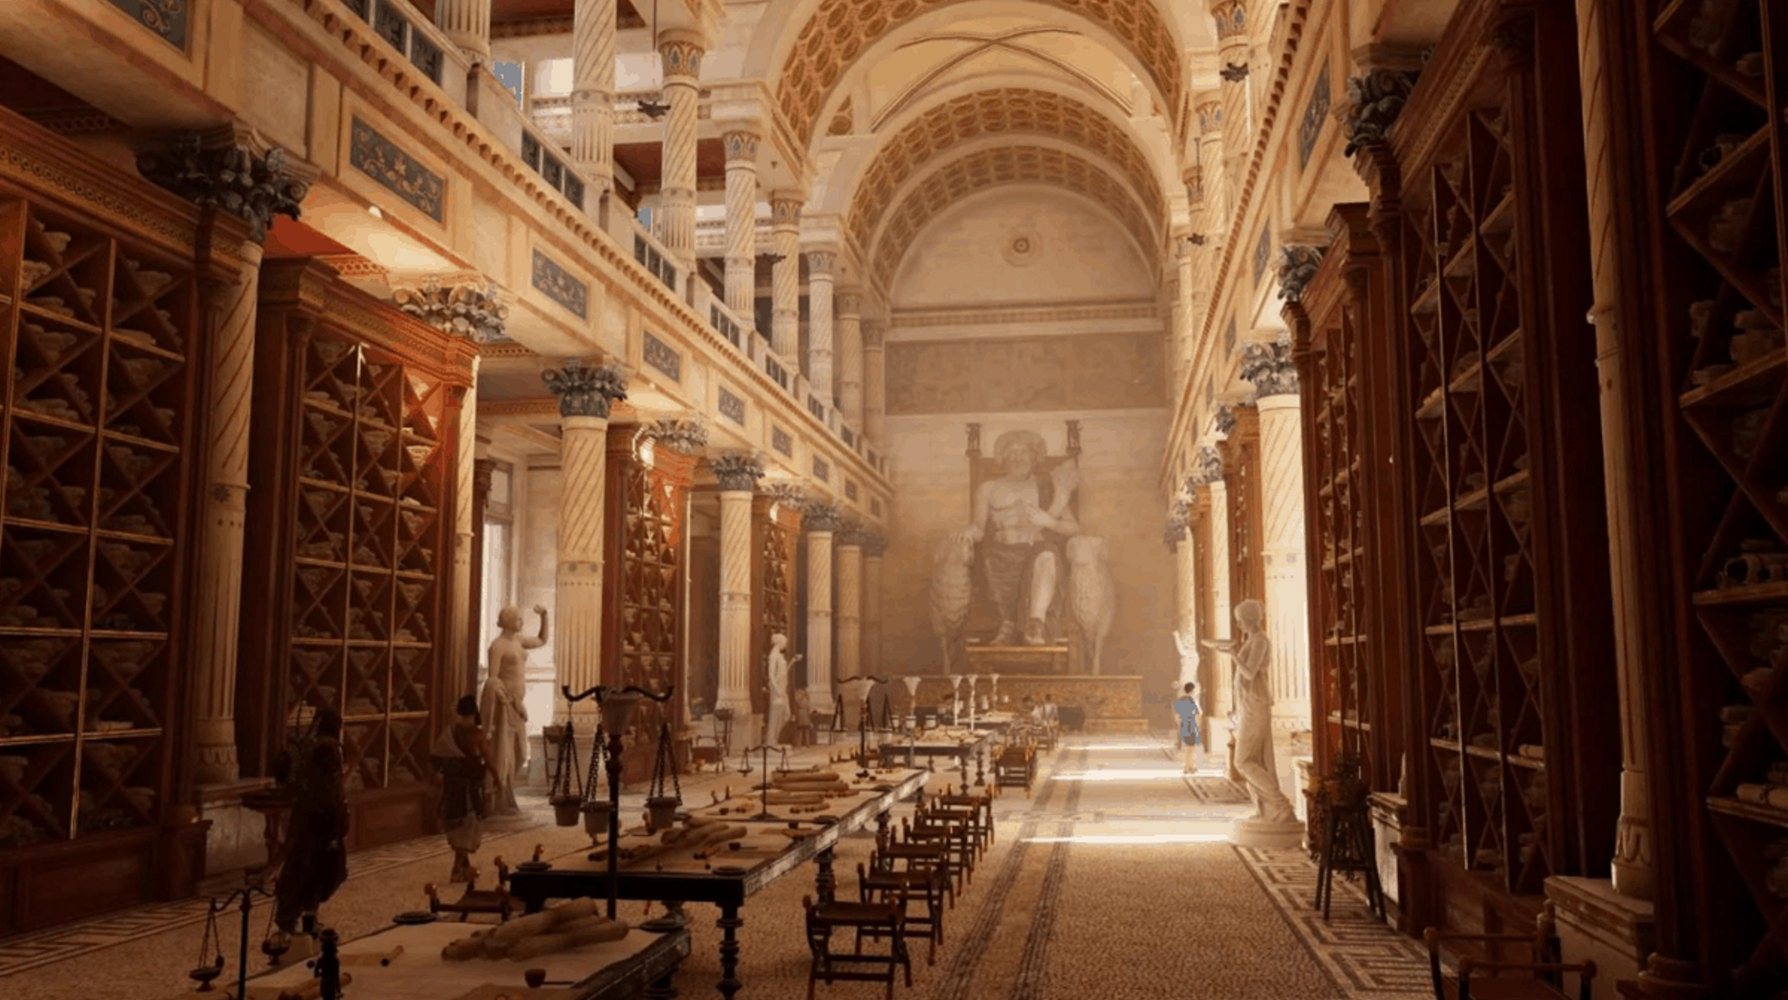 Александрийская библиотека фото в древности